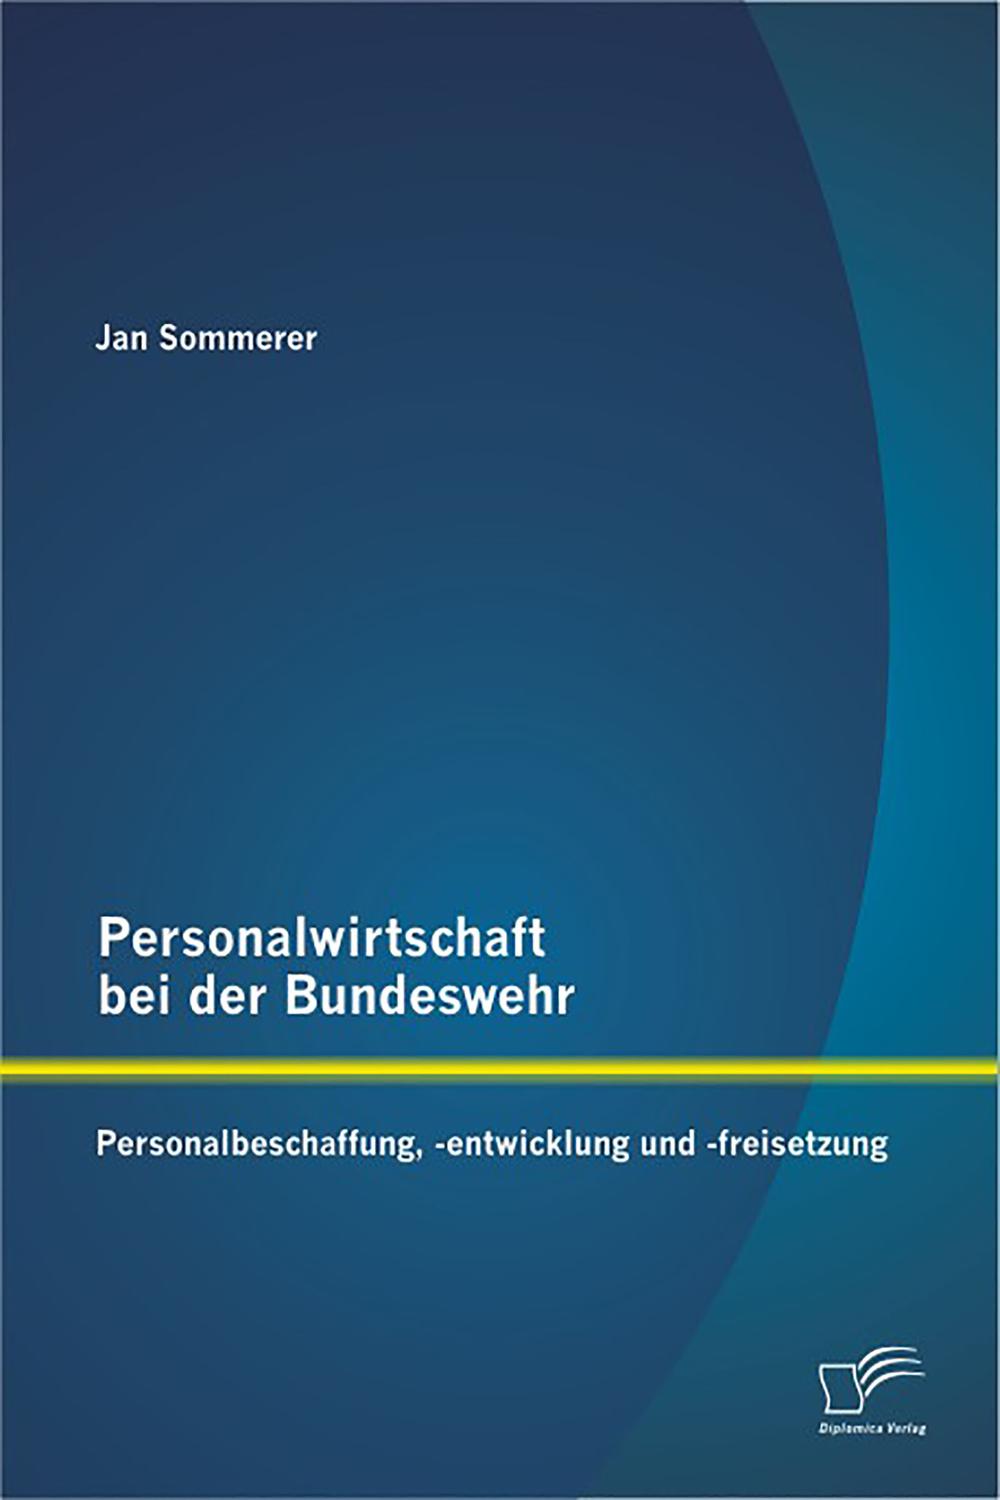 Personalwirtschaft bei der Bundeswehr: Personalbeschaffung, -entwicklung und -freisetzung - Jan Sommerer